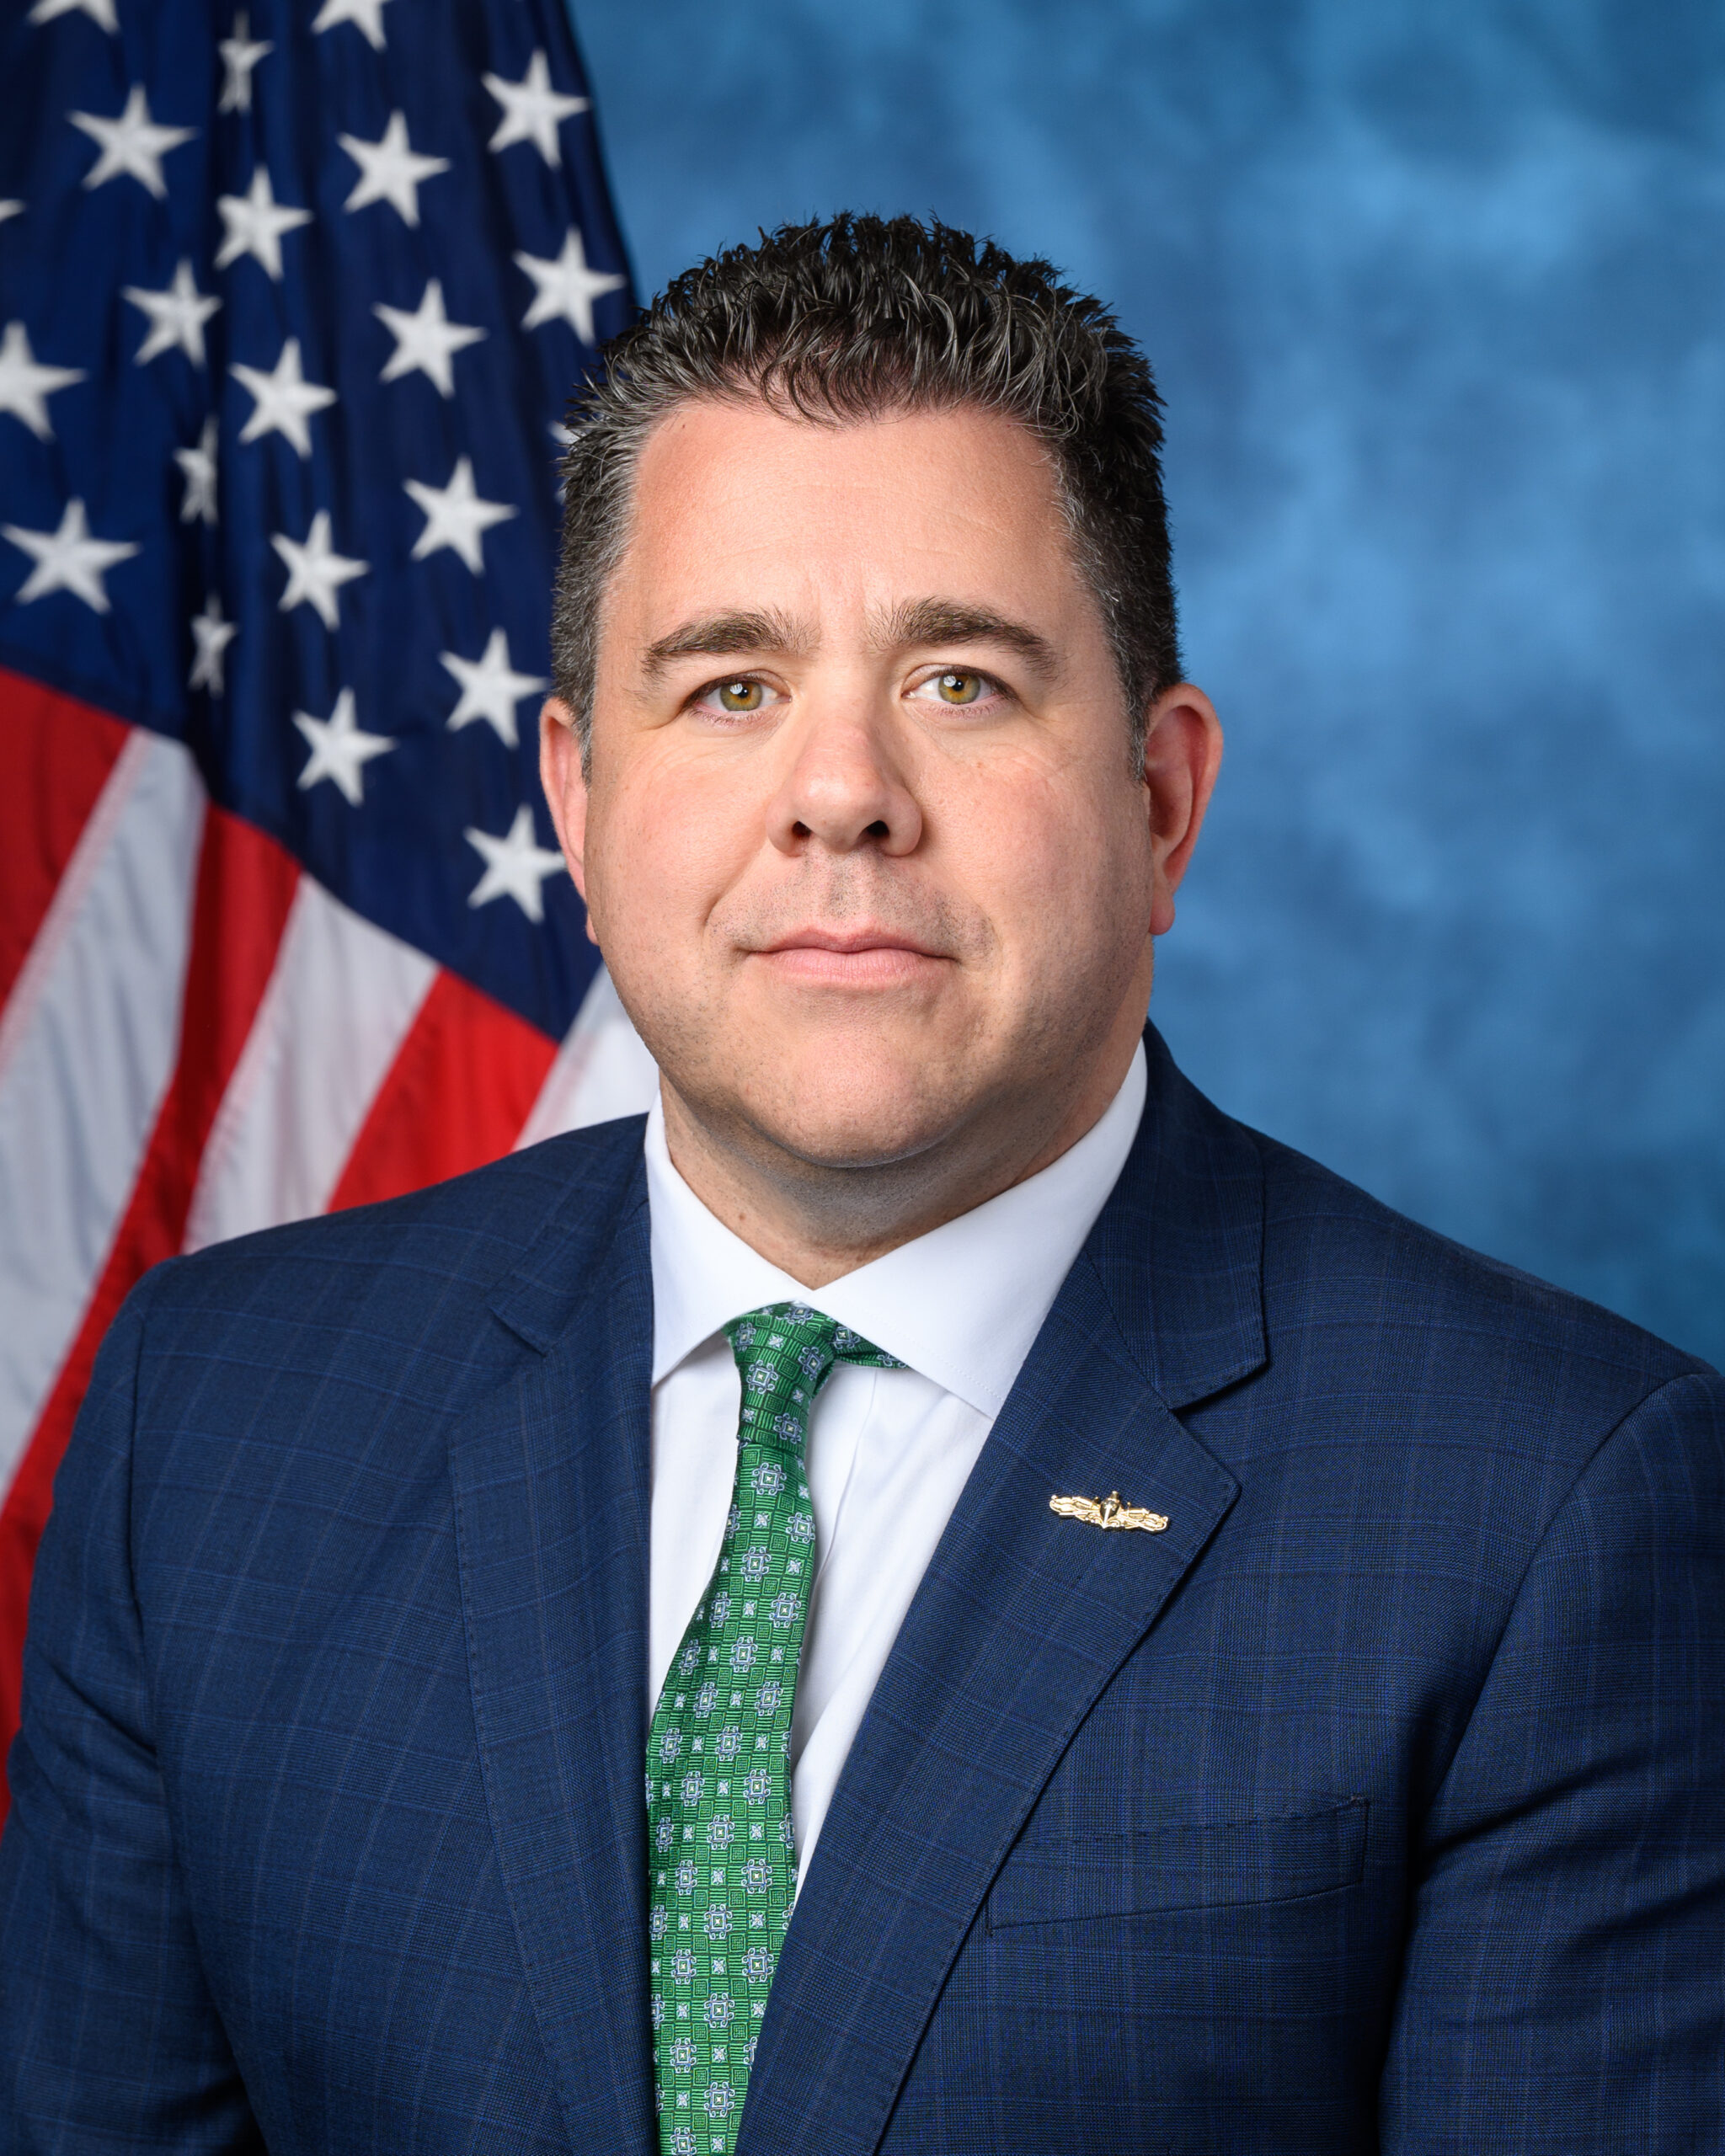 U.S. Representative Nick LaLota